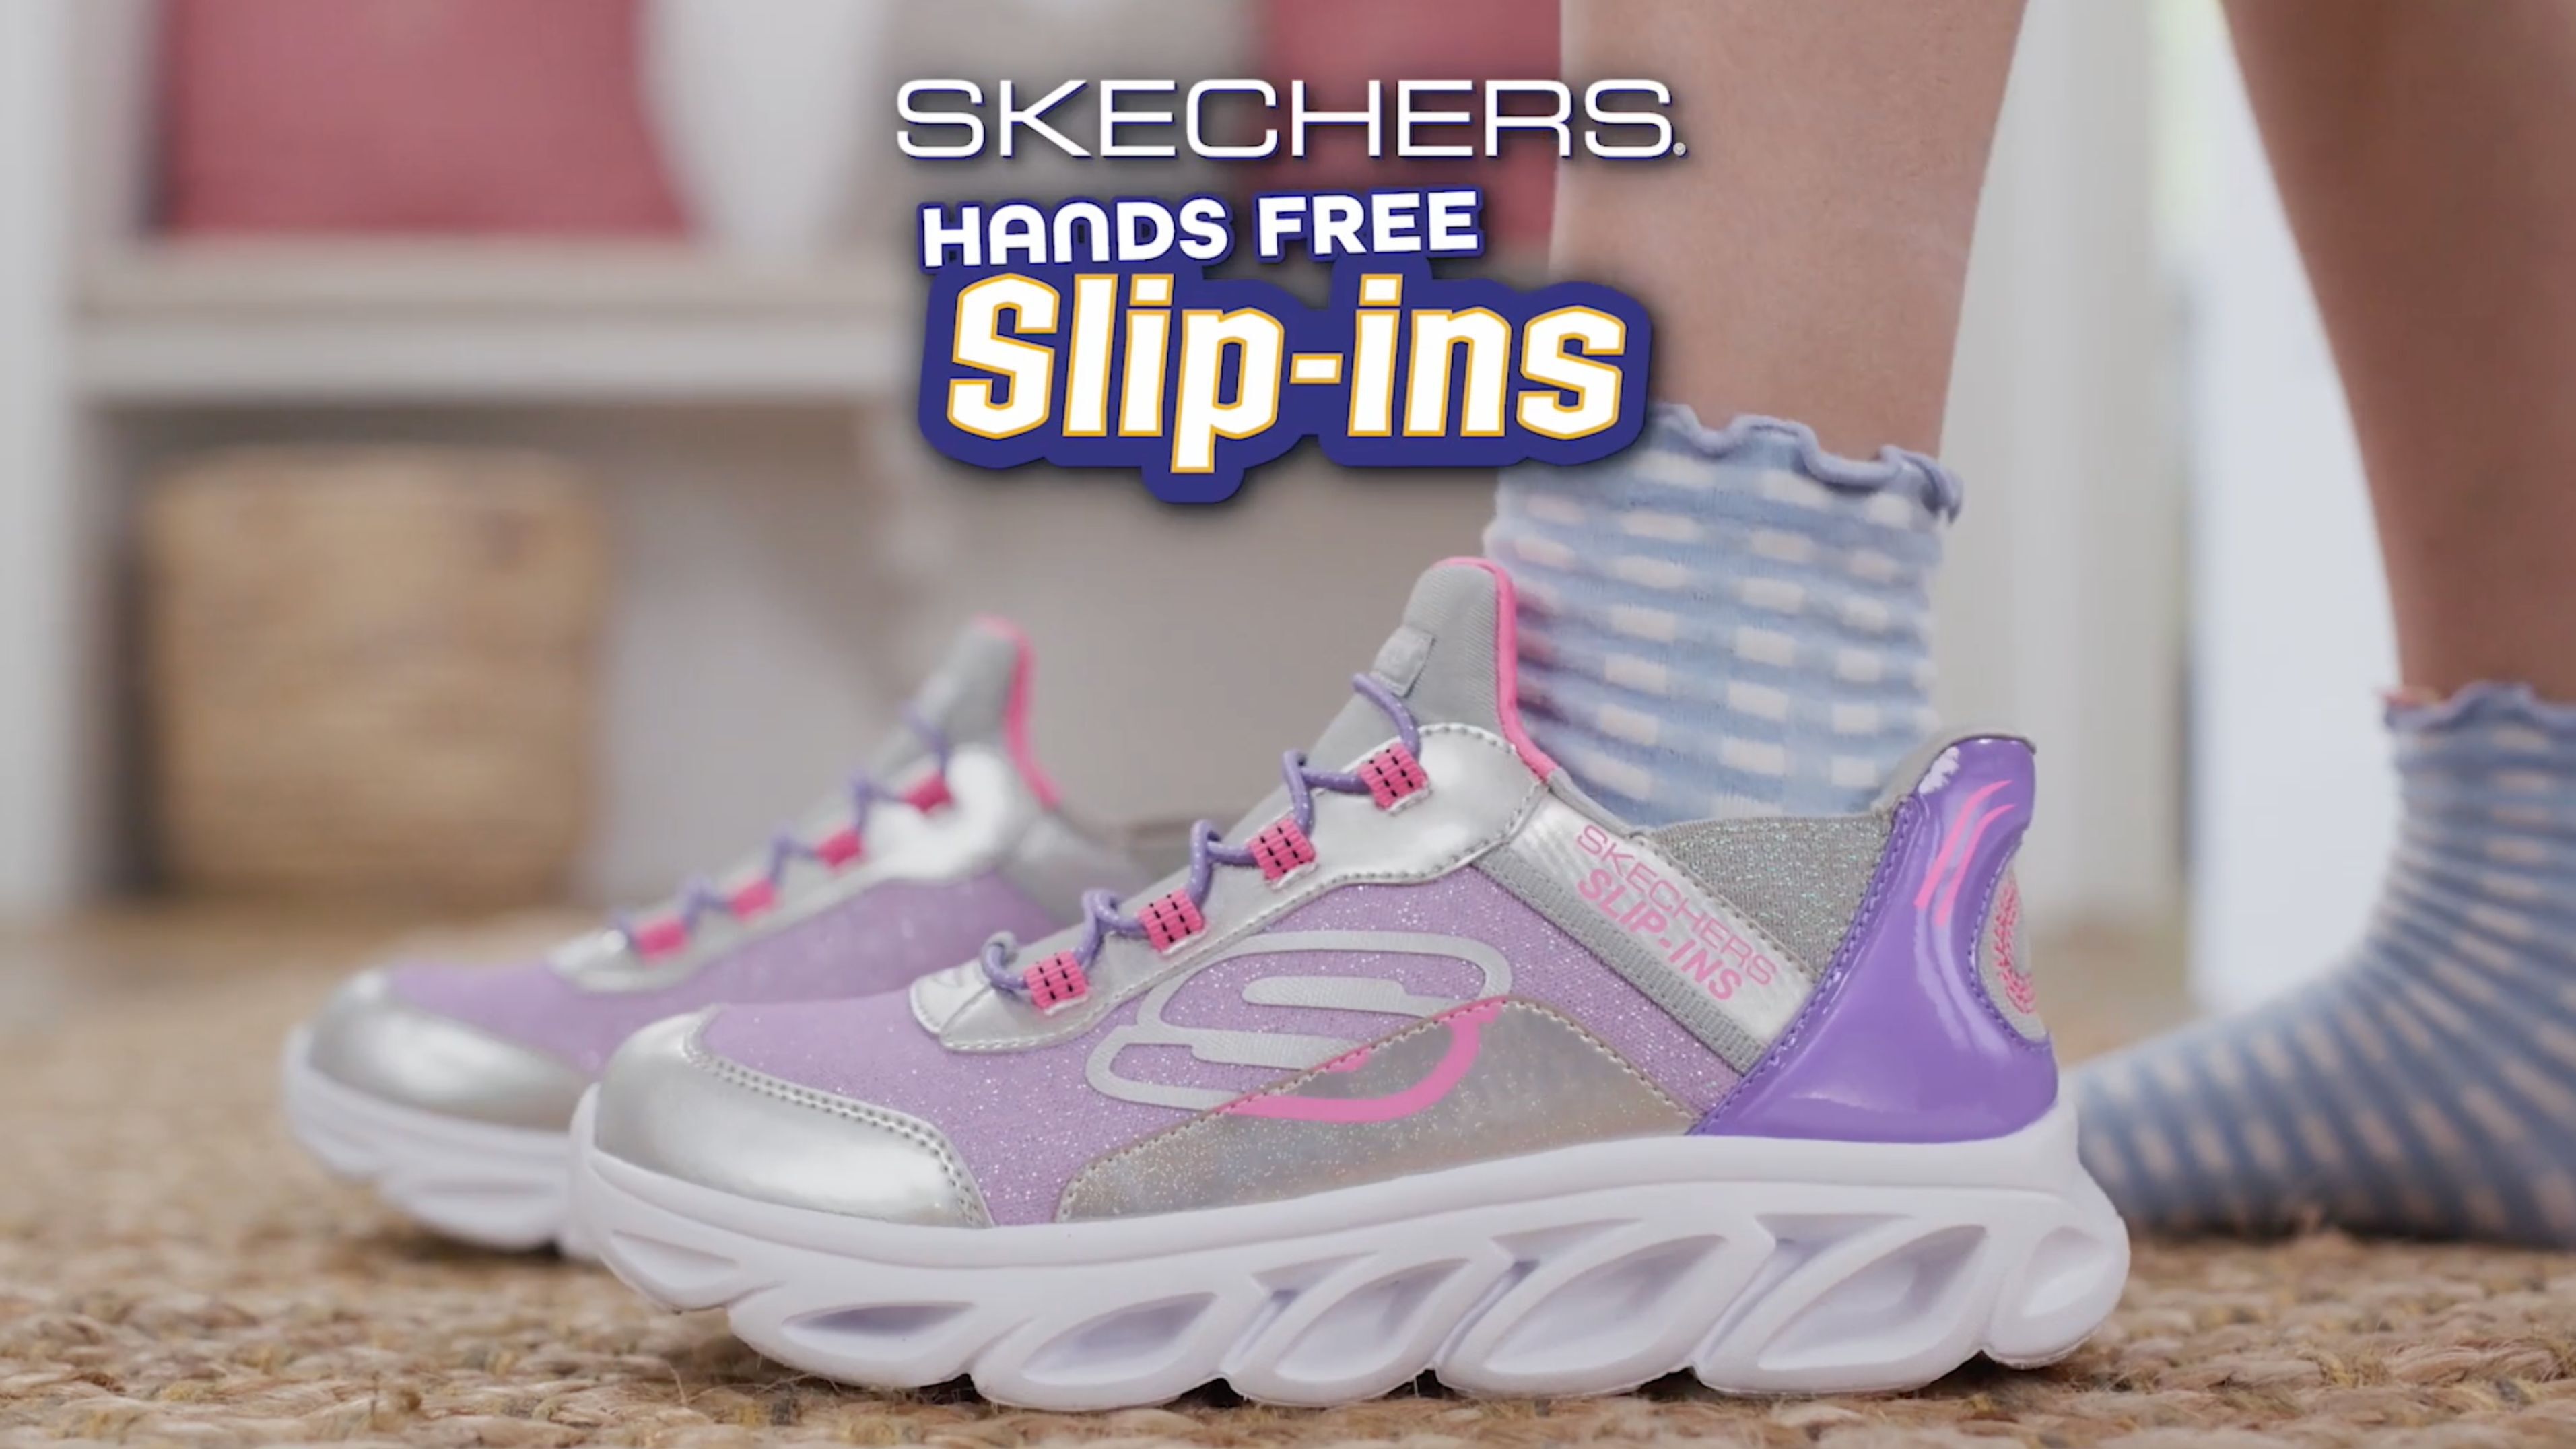 La nueva colección de Skechers está aquí! ¡Los últimos diseños y tendencias  en calzado para hombre, mujer y niña! Desde tenis deportivos hasta tenis, By Zitio